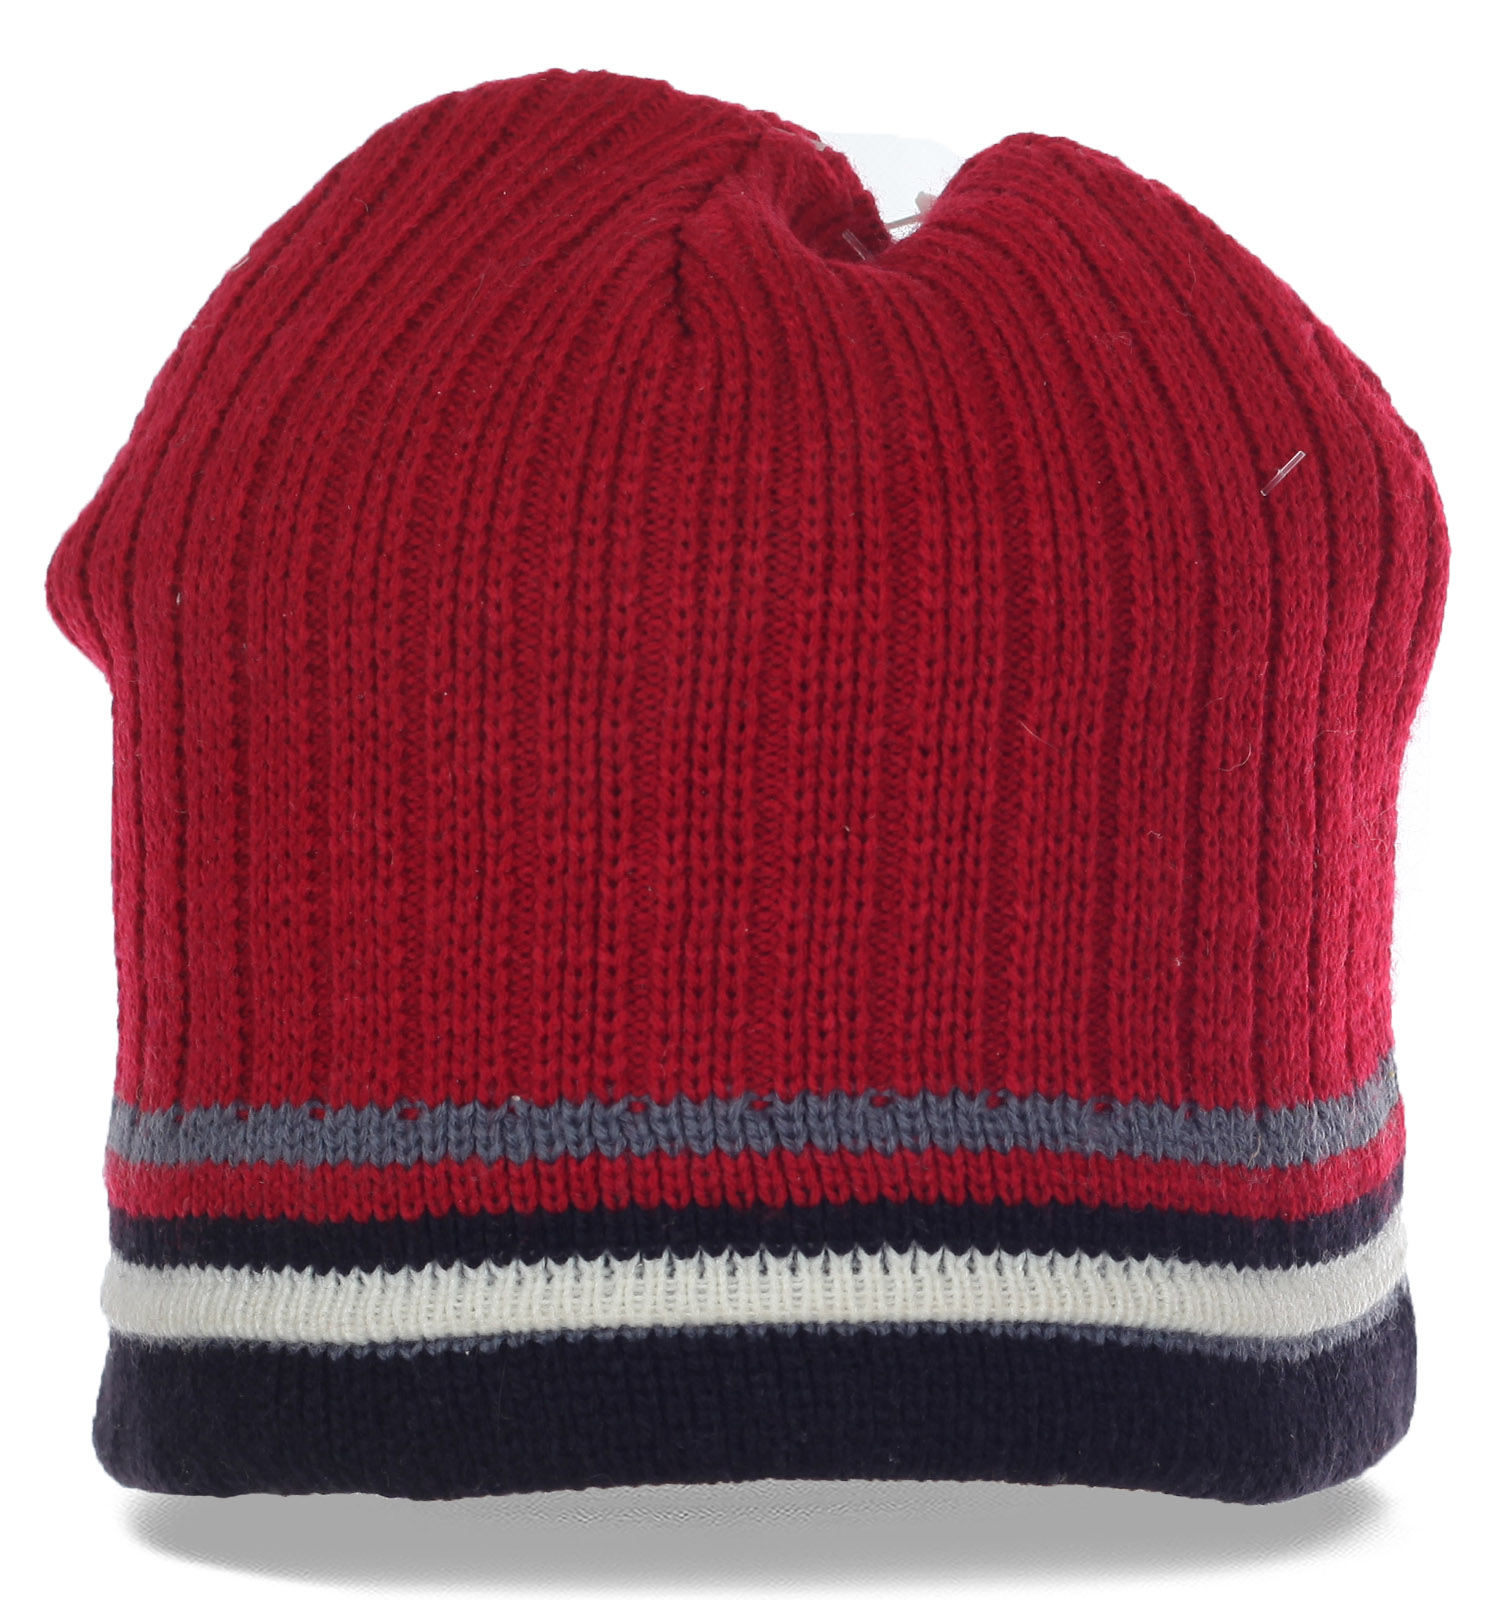 Заказать спортивную мужскую шапку сделает Вашу жизнь комфортнее, надежно защитит голову от ветра и холода по низкой цене